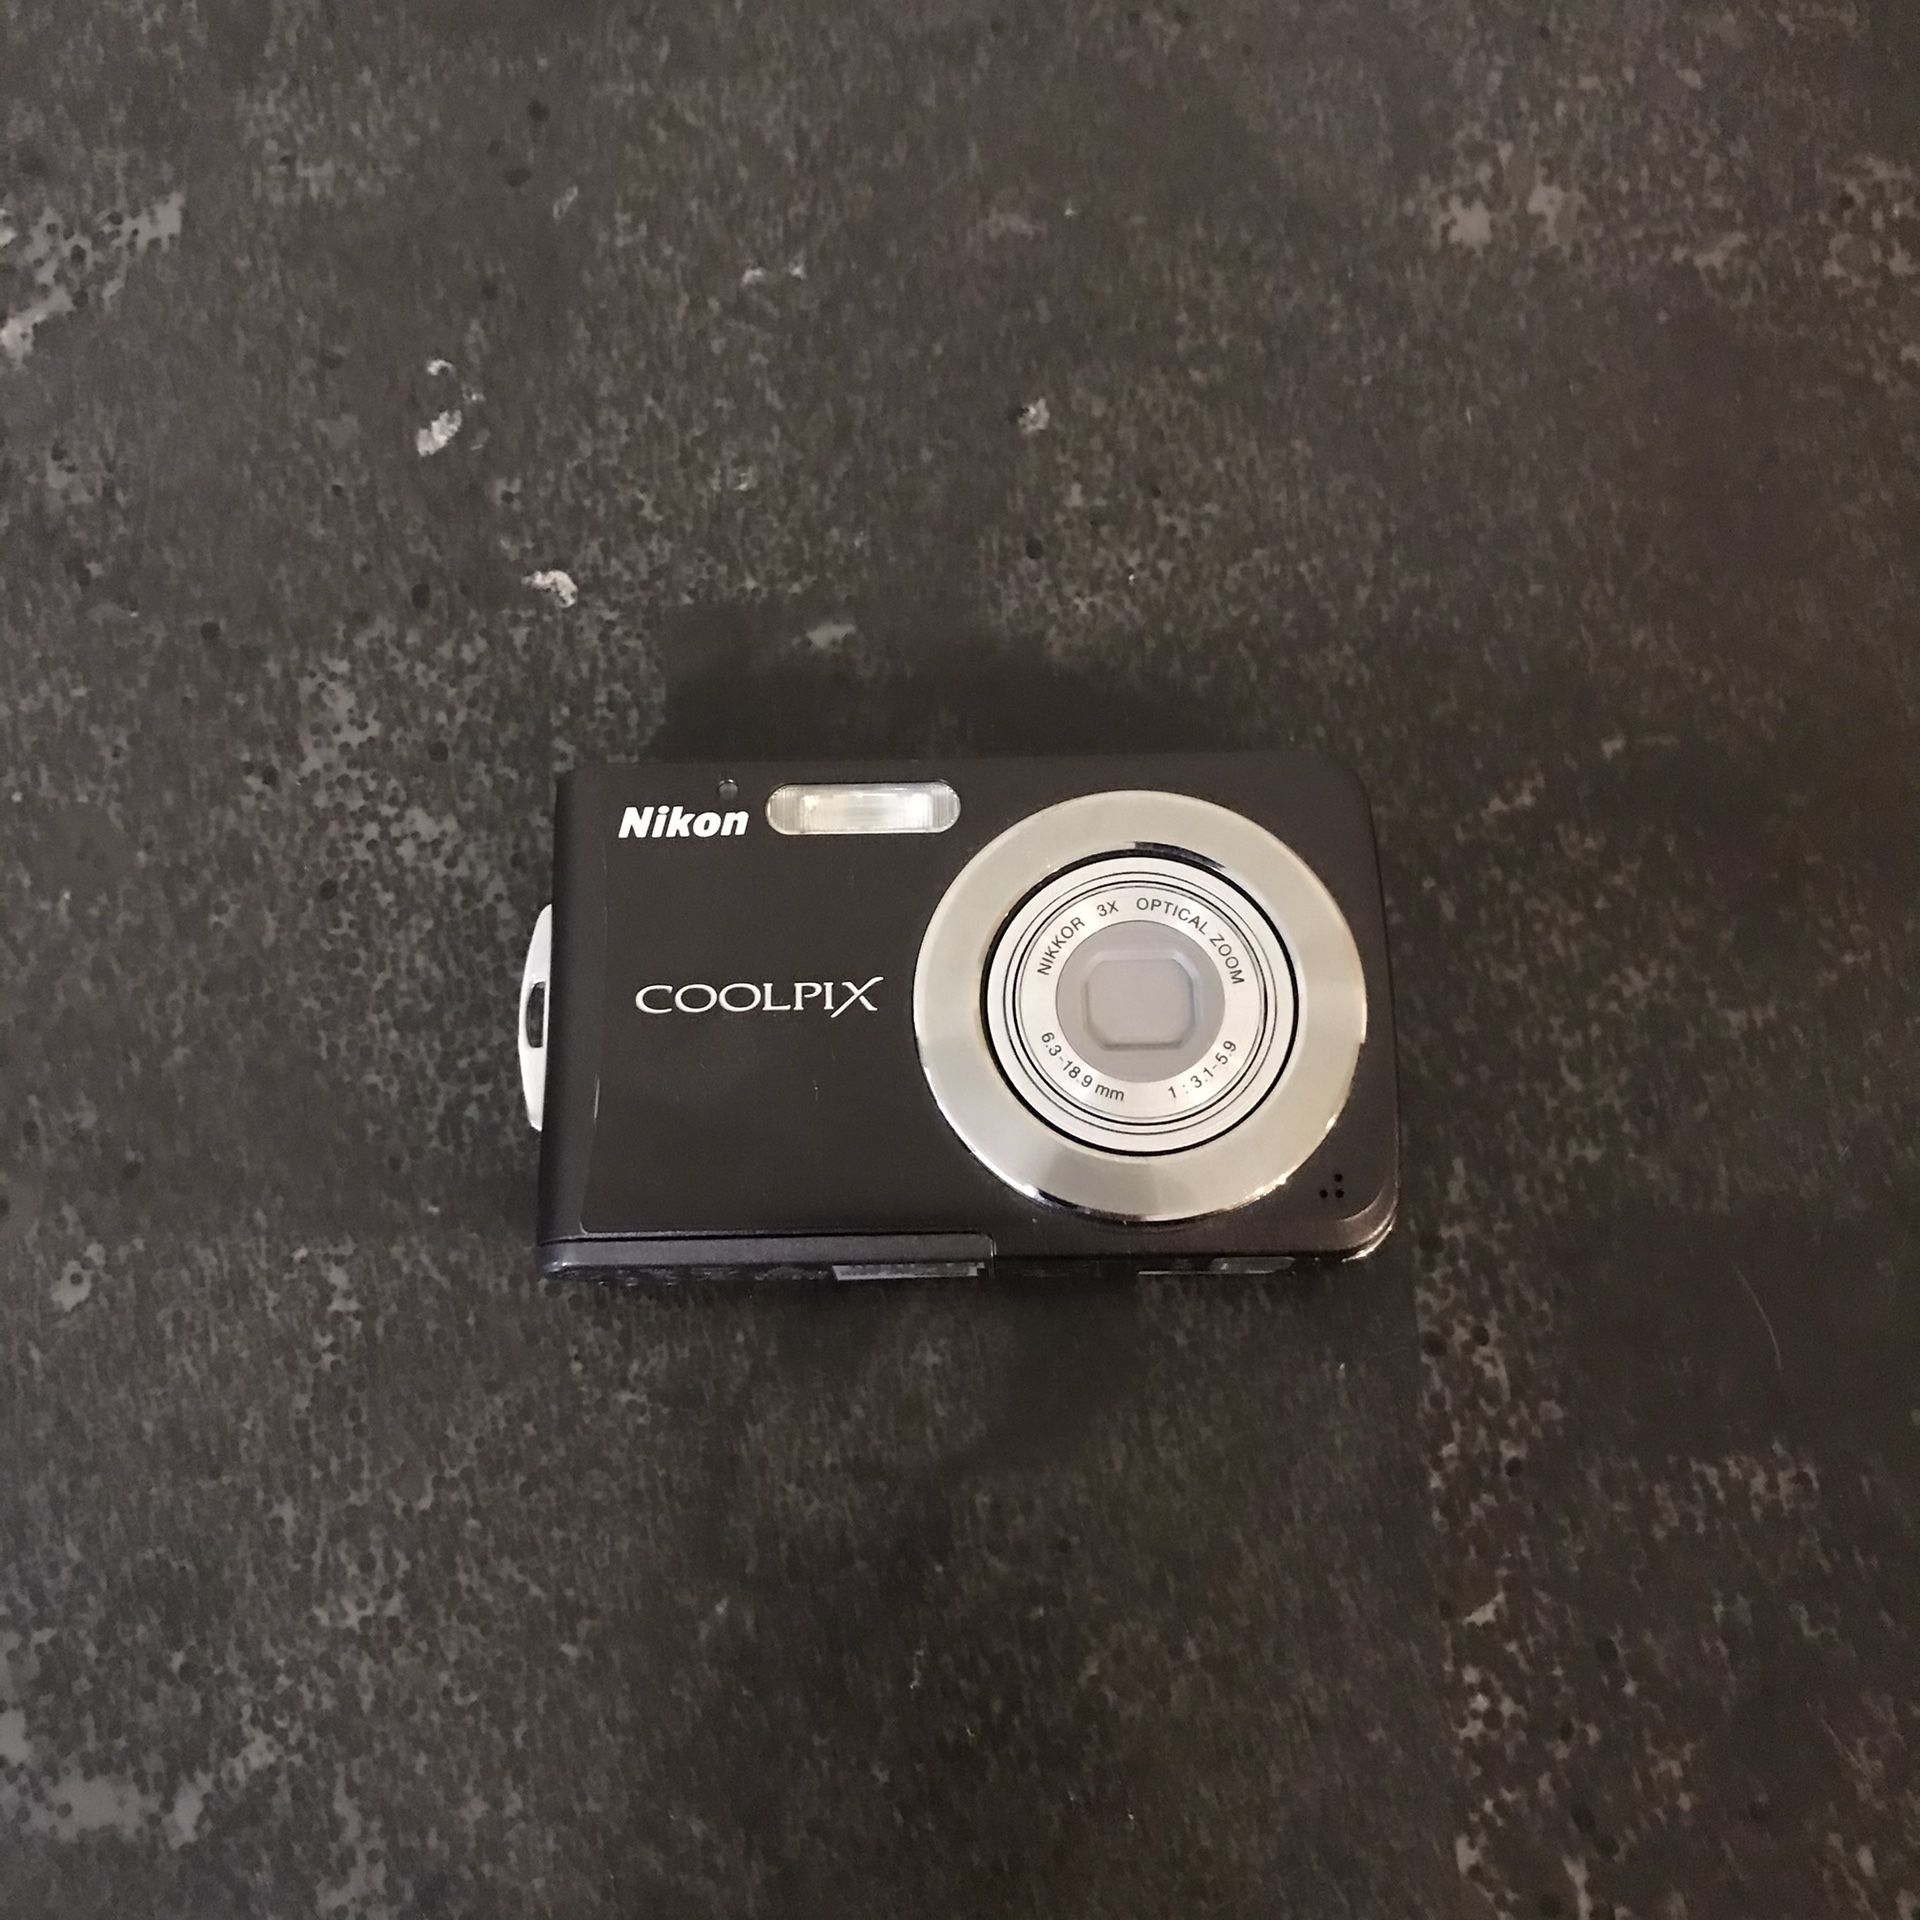 Coolpix Digital Camera